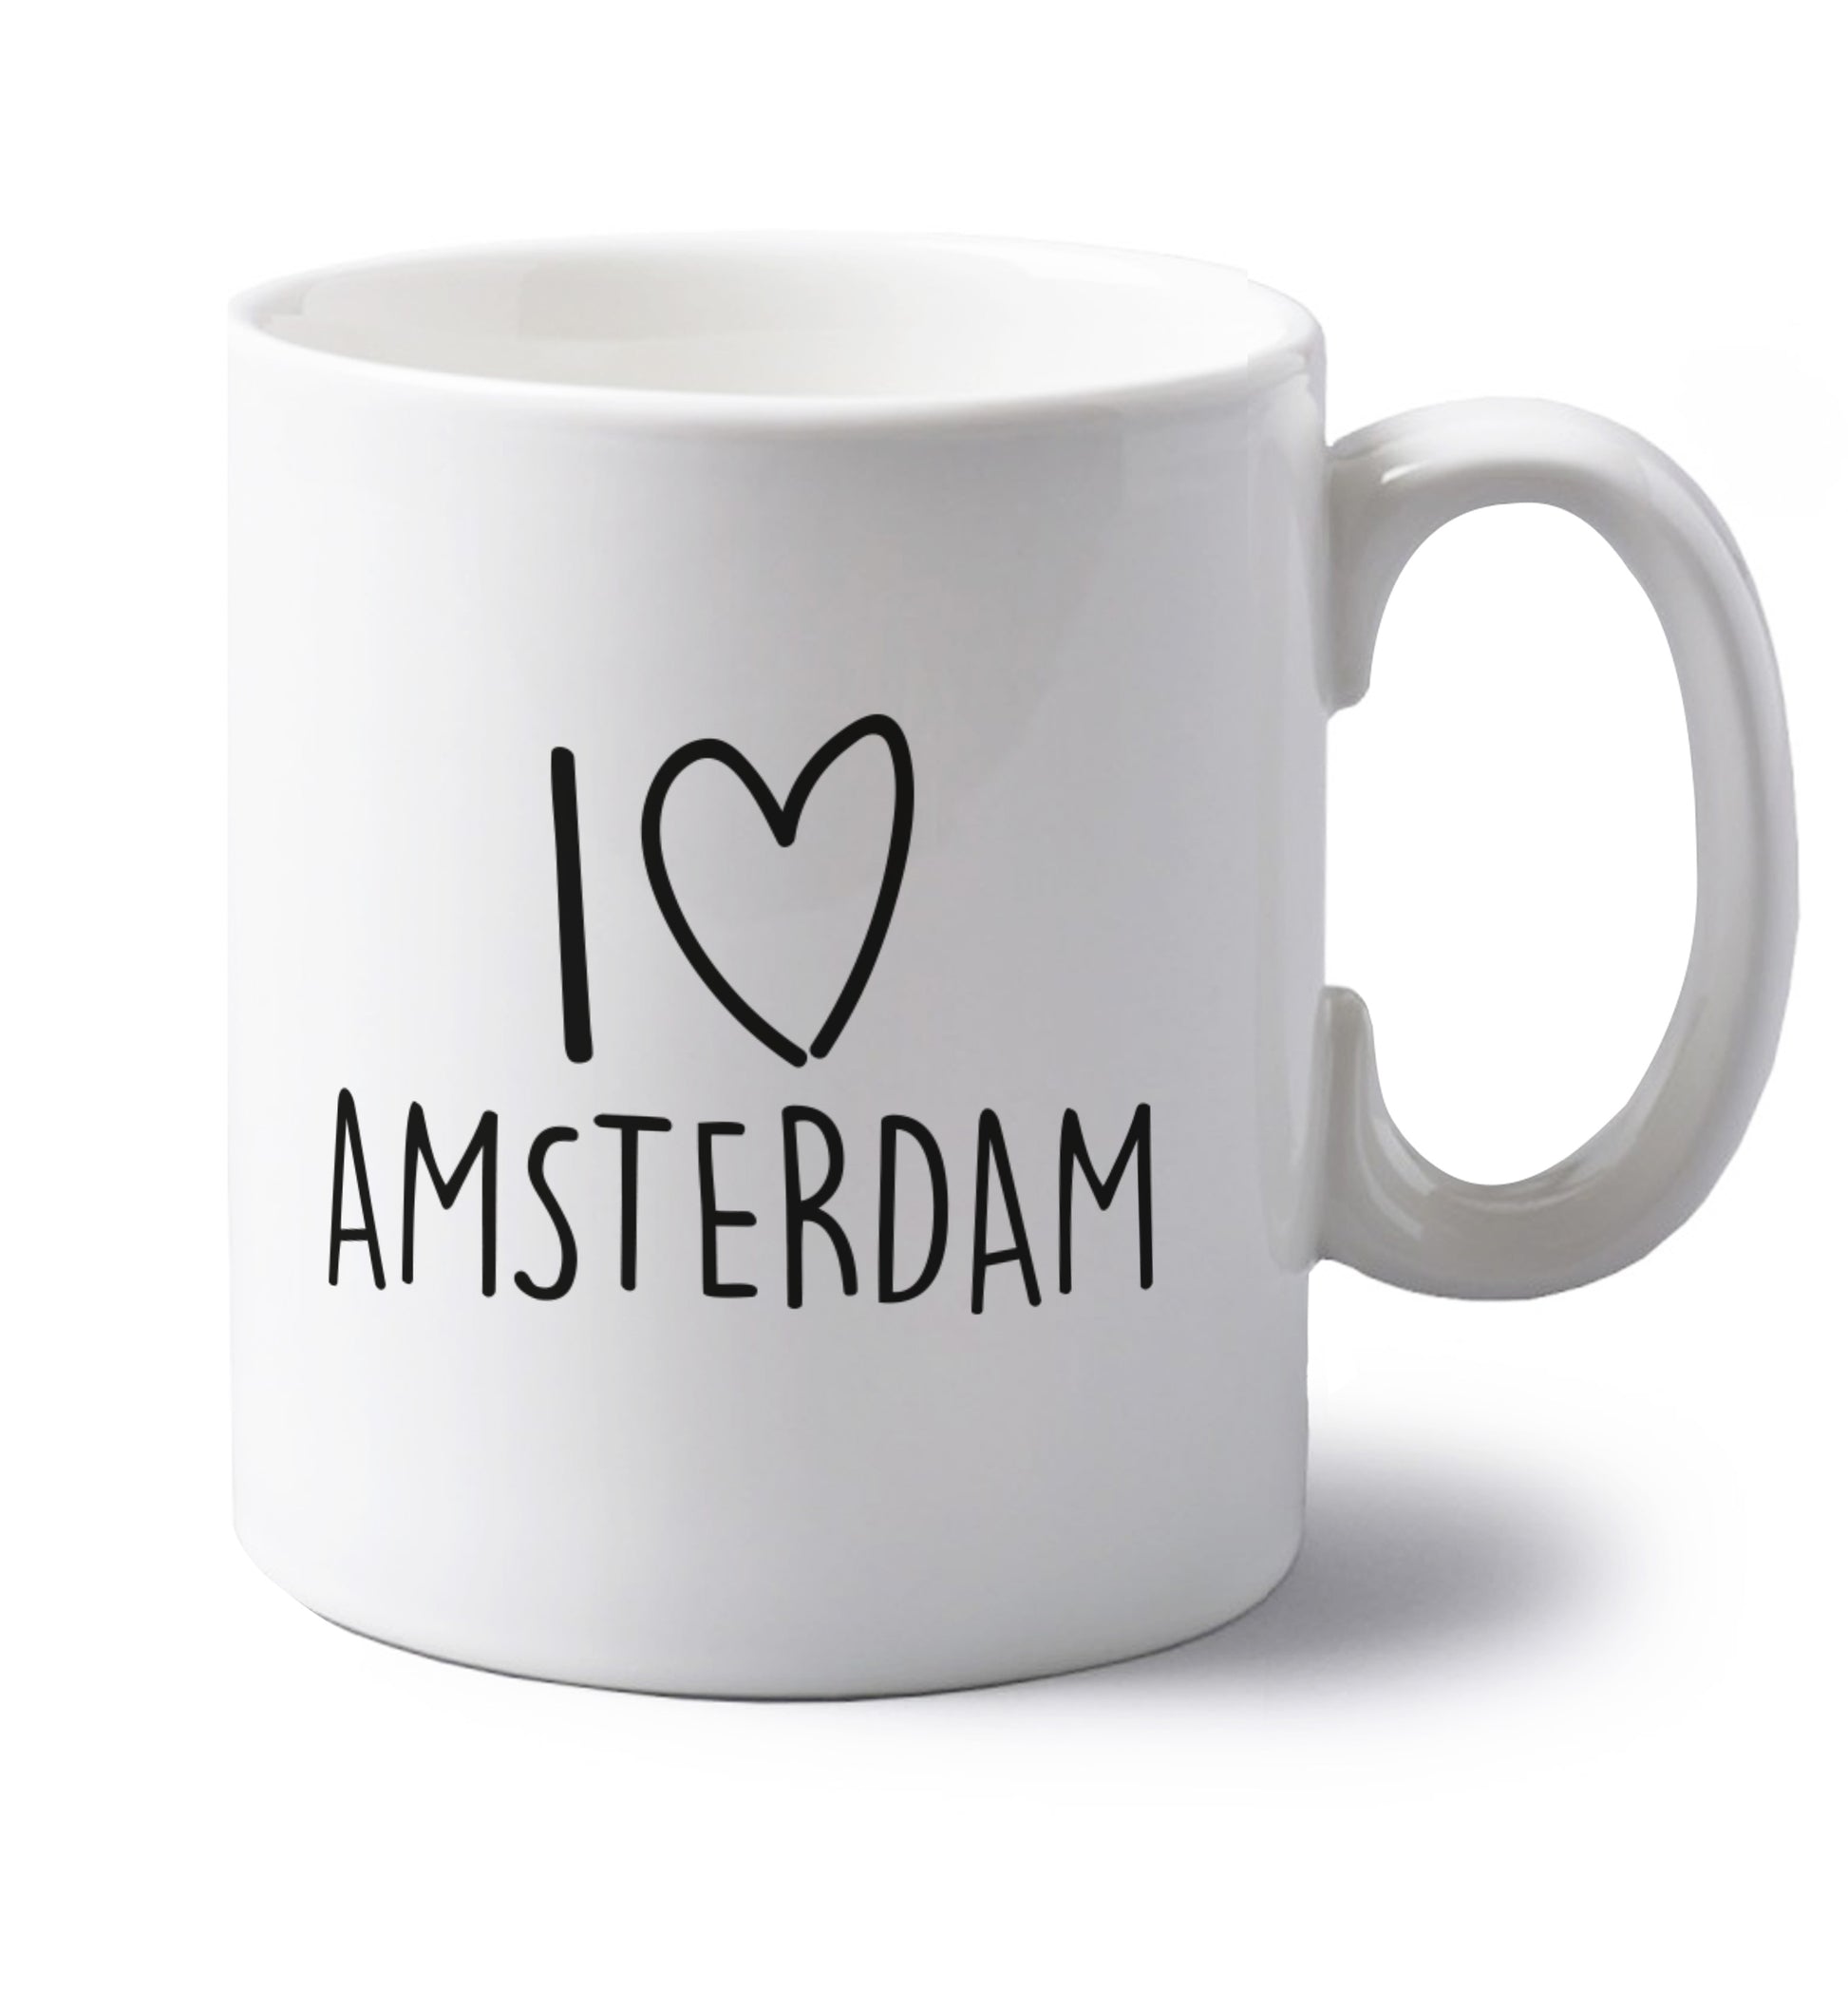 I love Amsterdam left handed white ceramic mug 